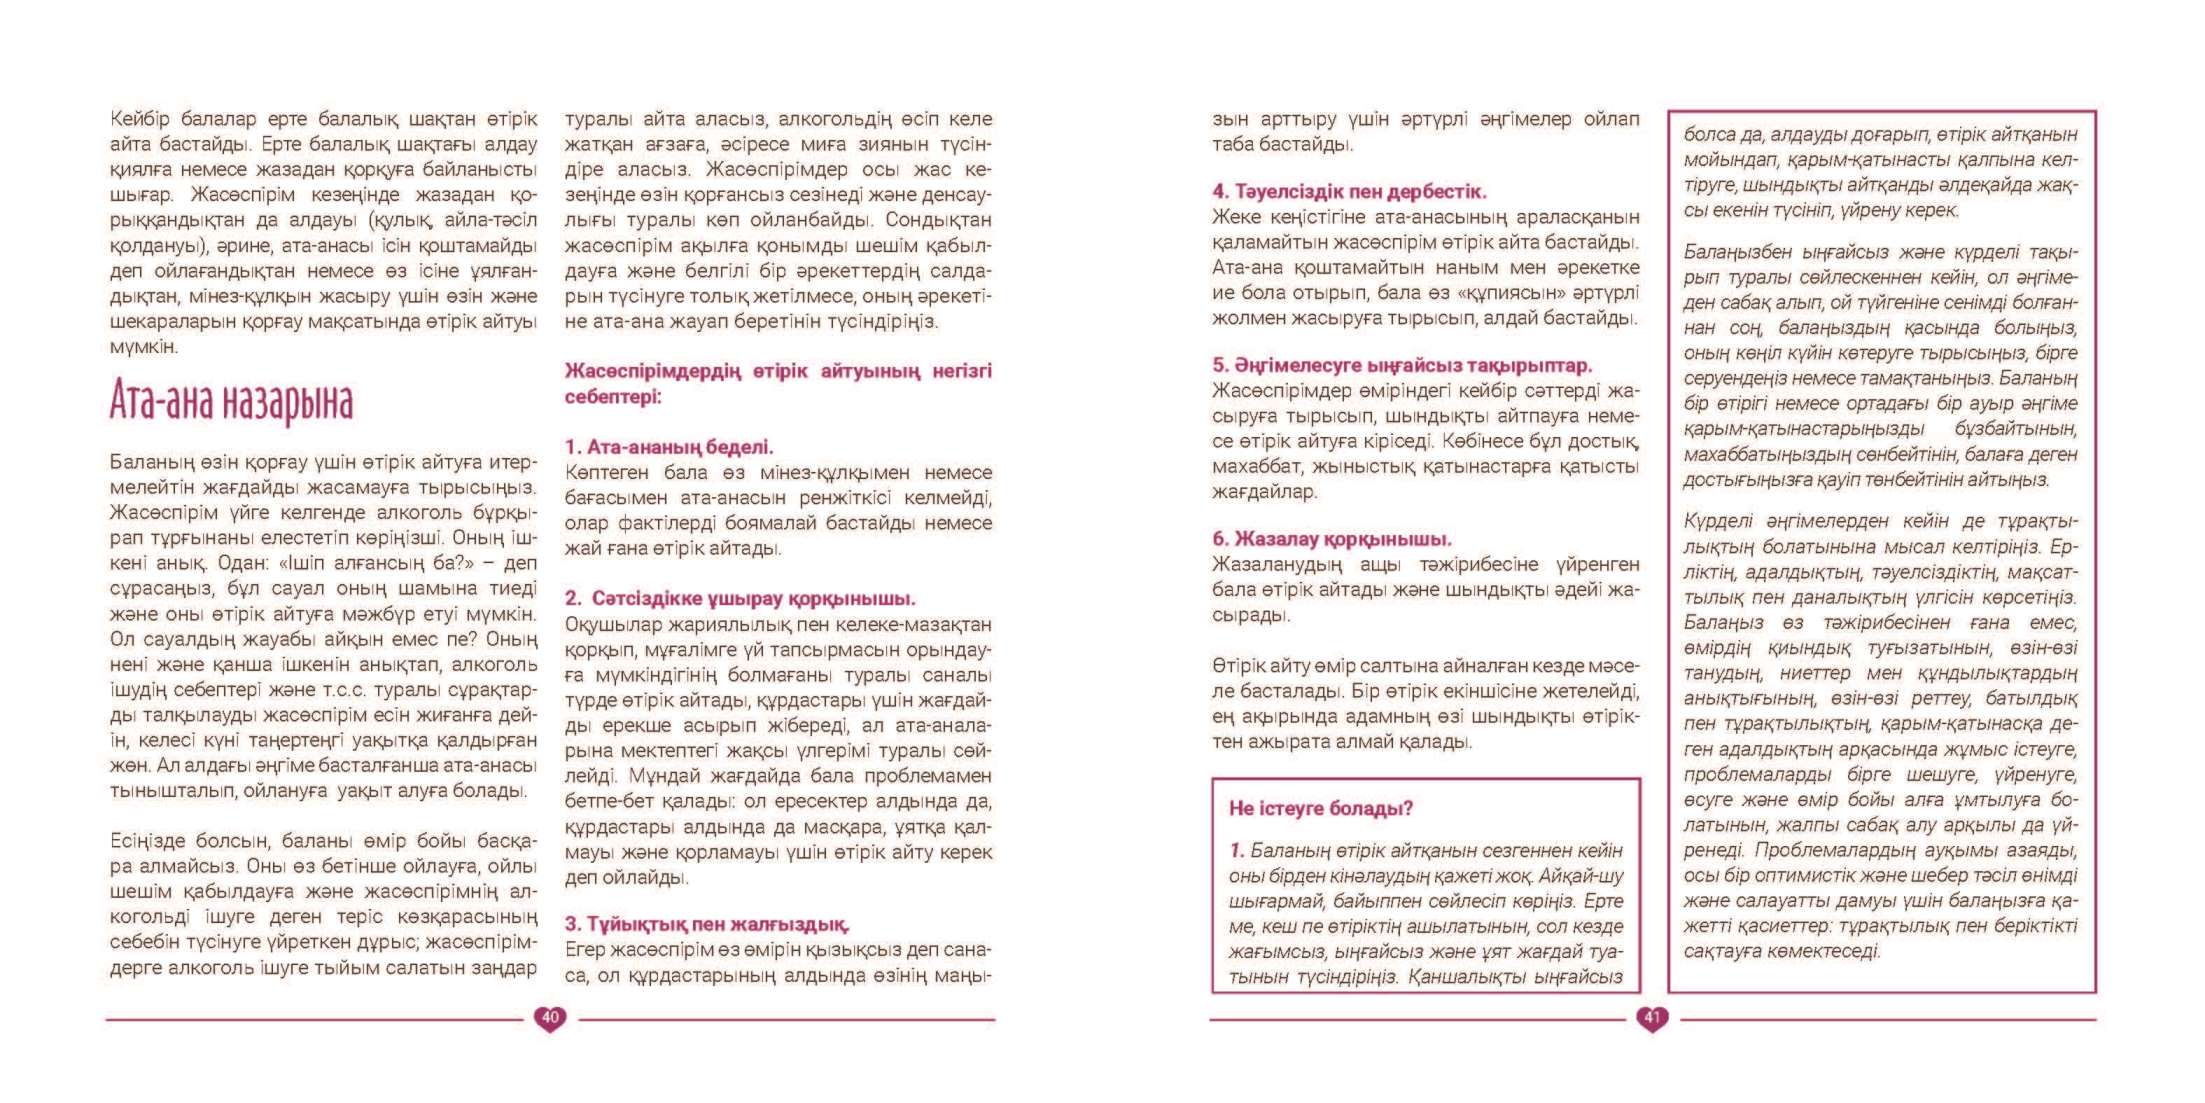 EVAC brochure KAZ (21).jpg